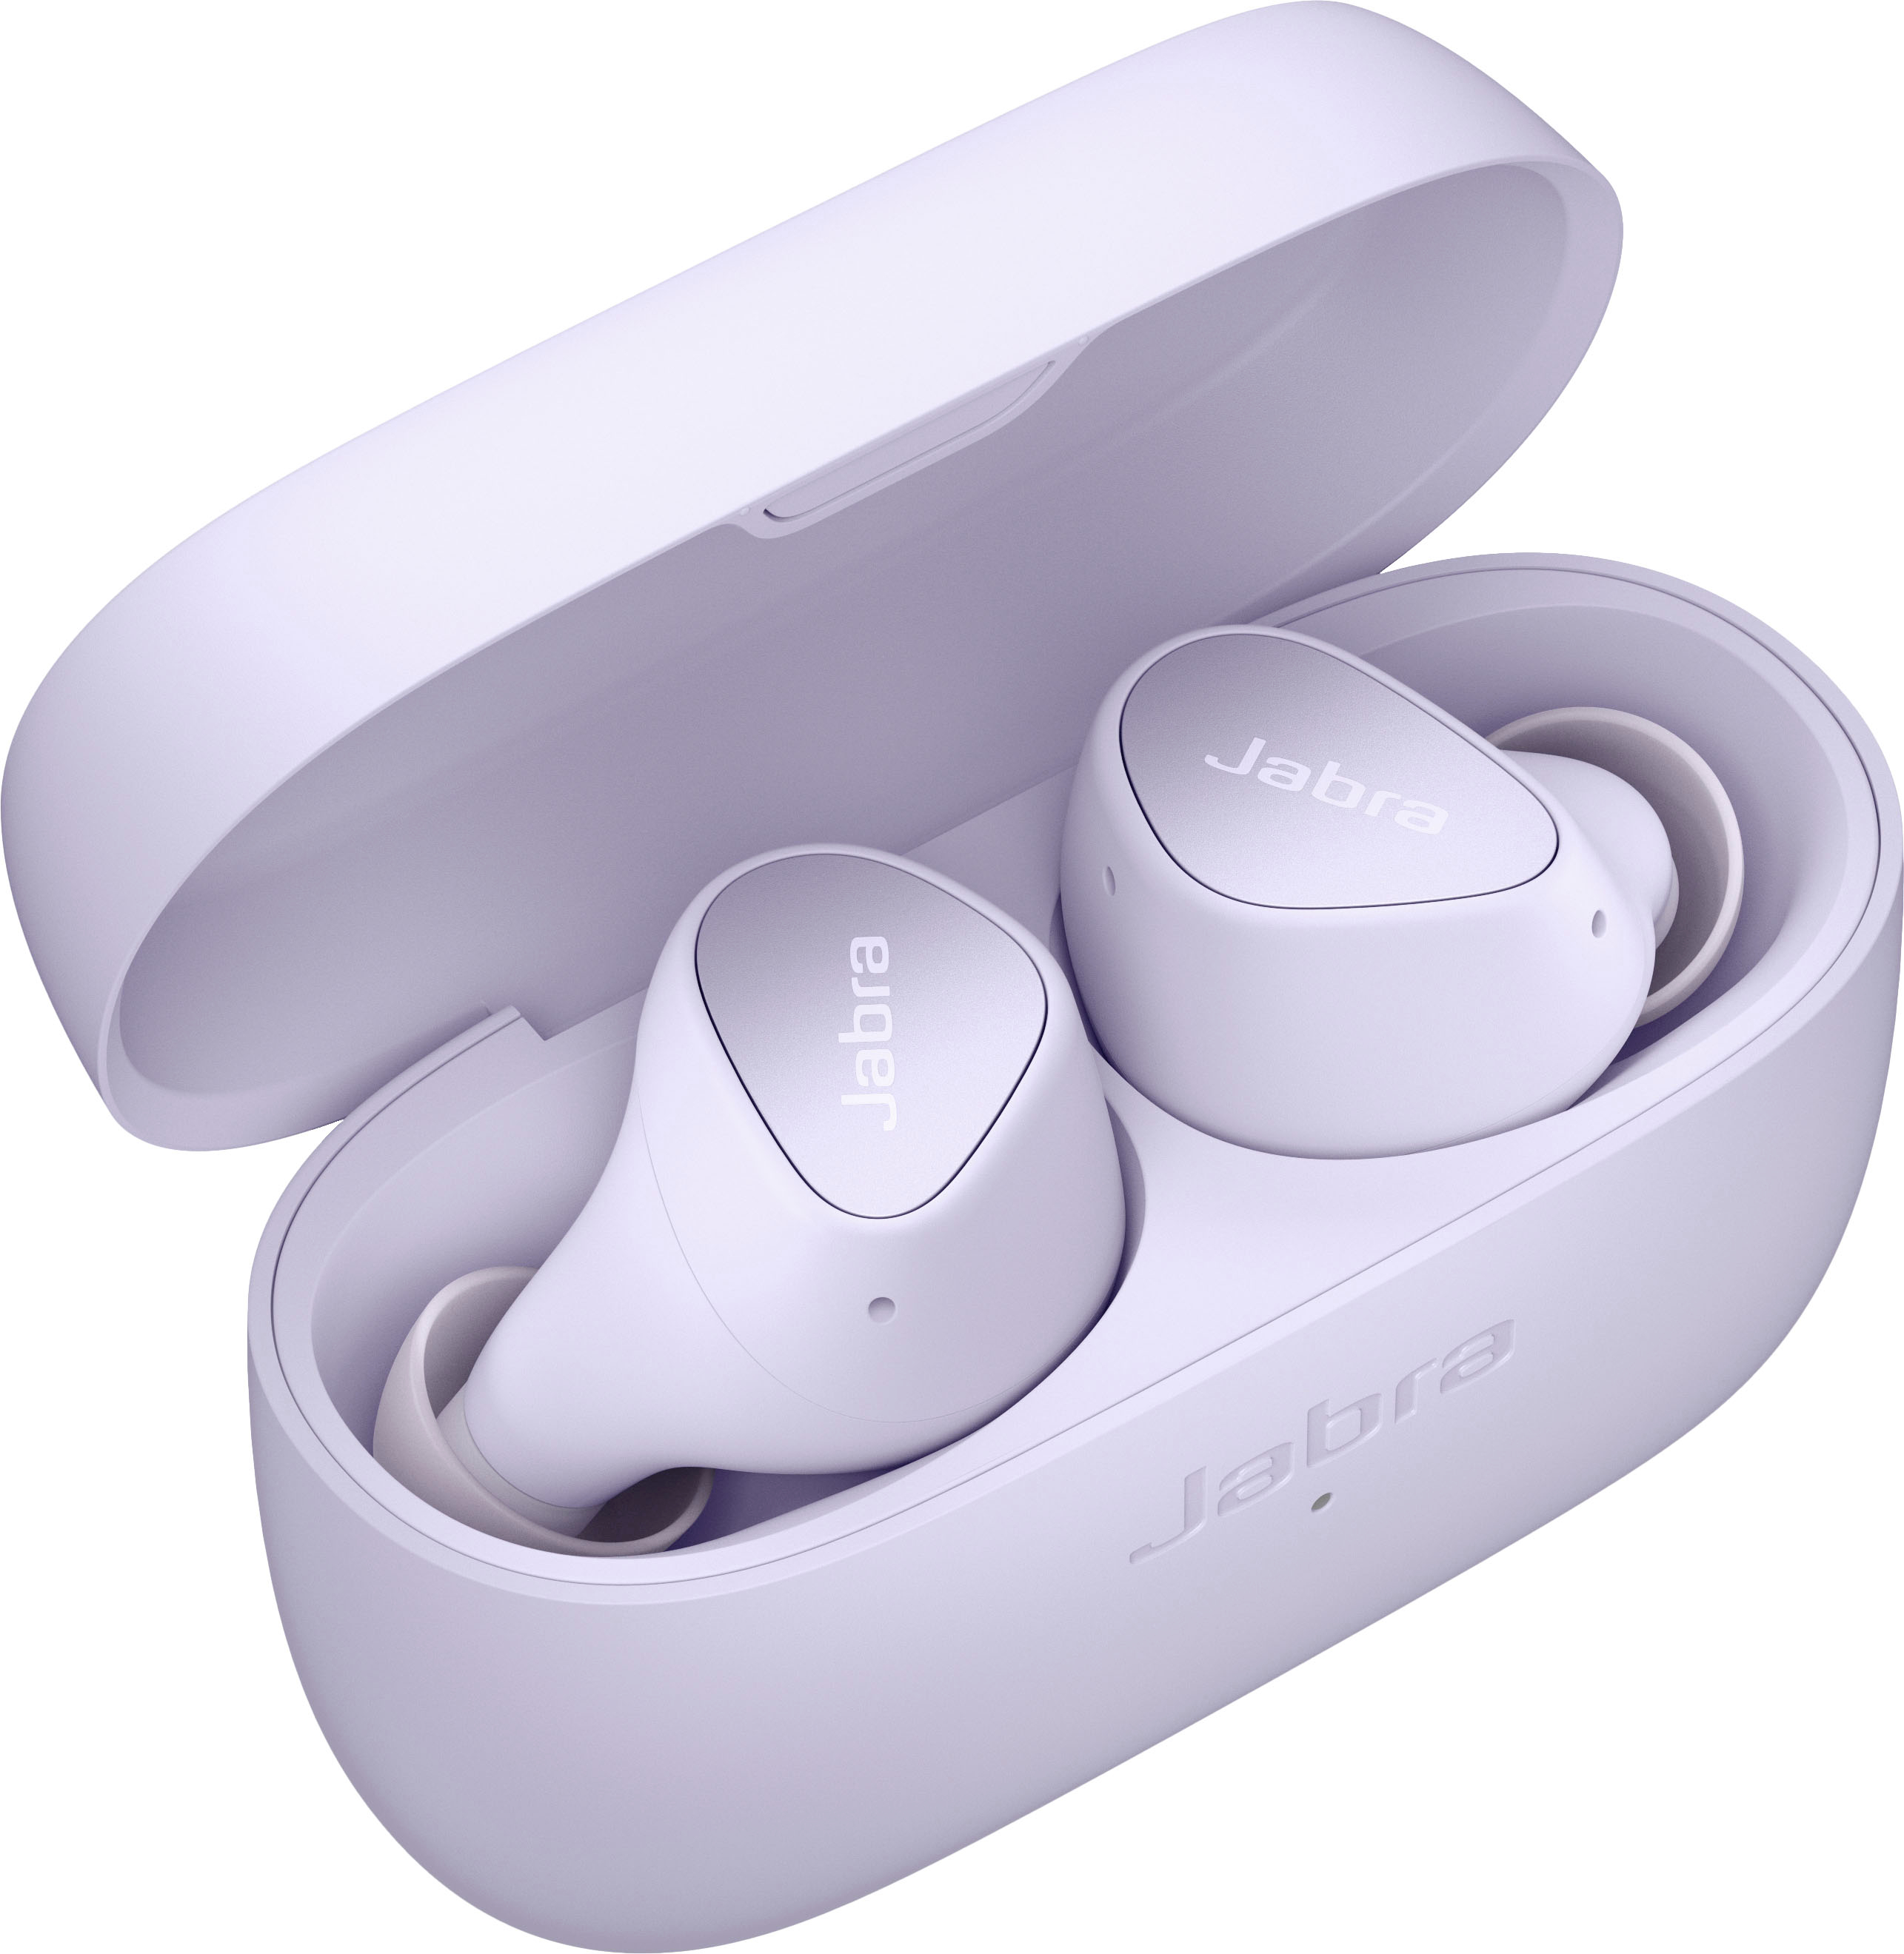 Jabra Elite 4 True Wireless Noise Cancelling In-ear Headphones Navy  100-99183001-99 - Best Buy